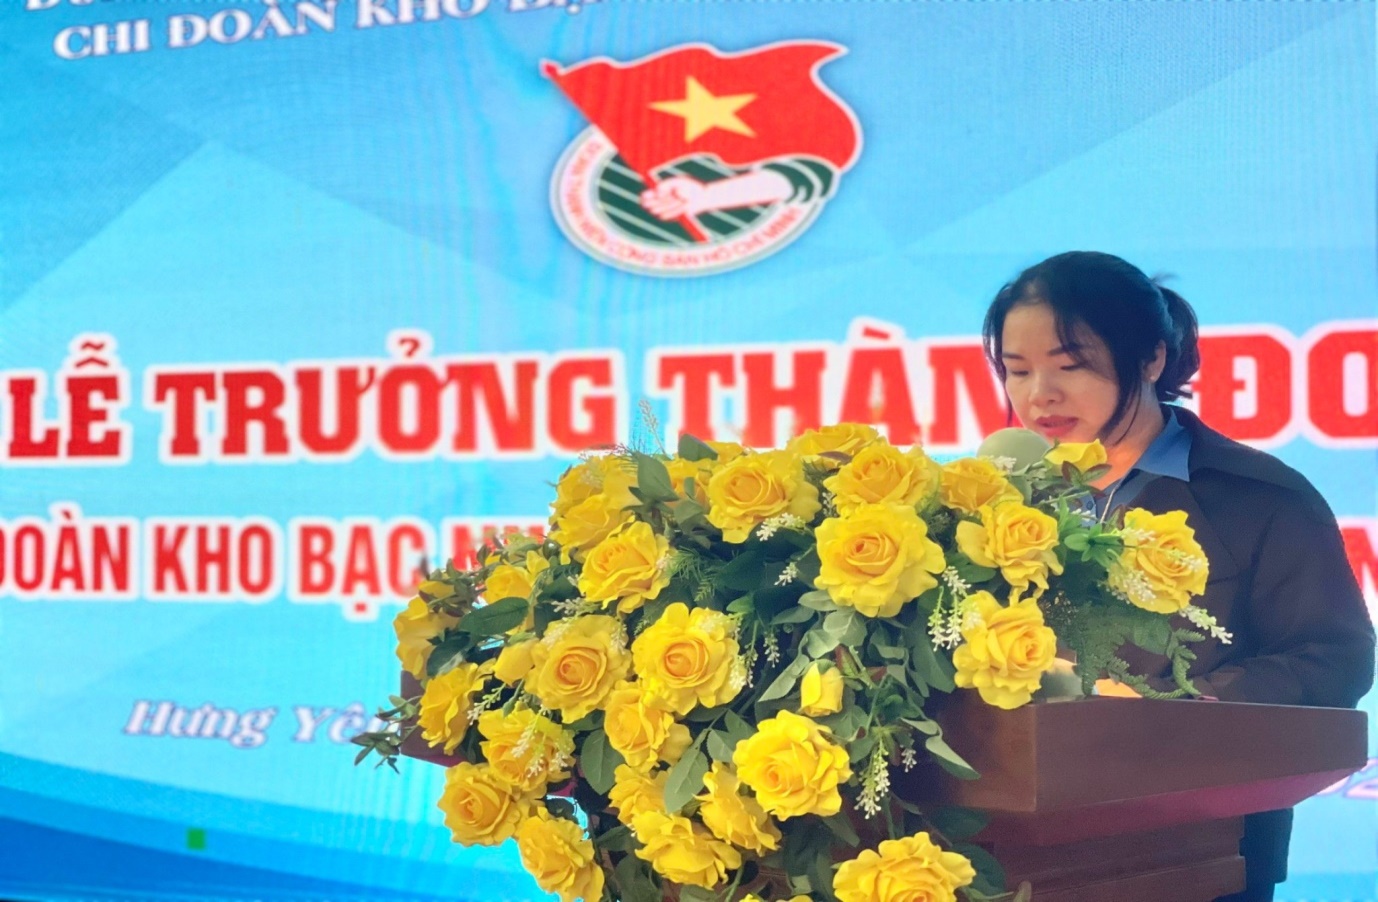 Đồng chí Trần Quỳnh Trang đại diện cho các đoàn viên trẻ trưởng thành  phát biểu tại buổi Lễ